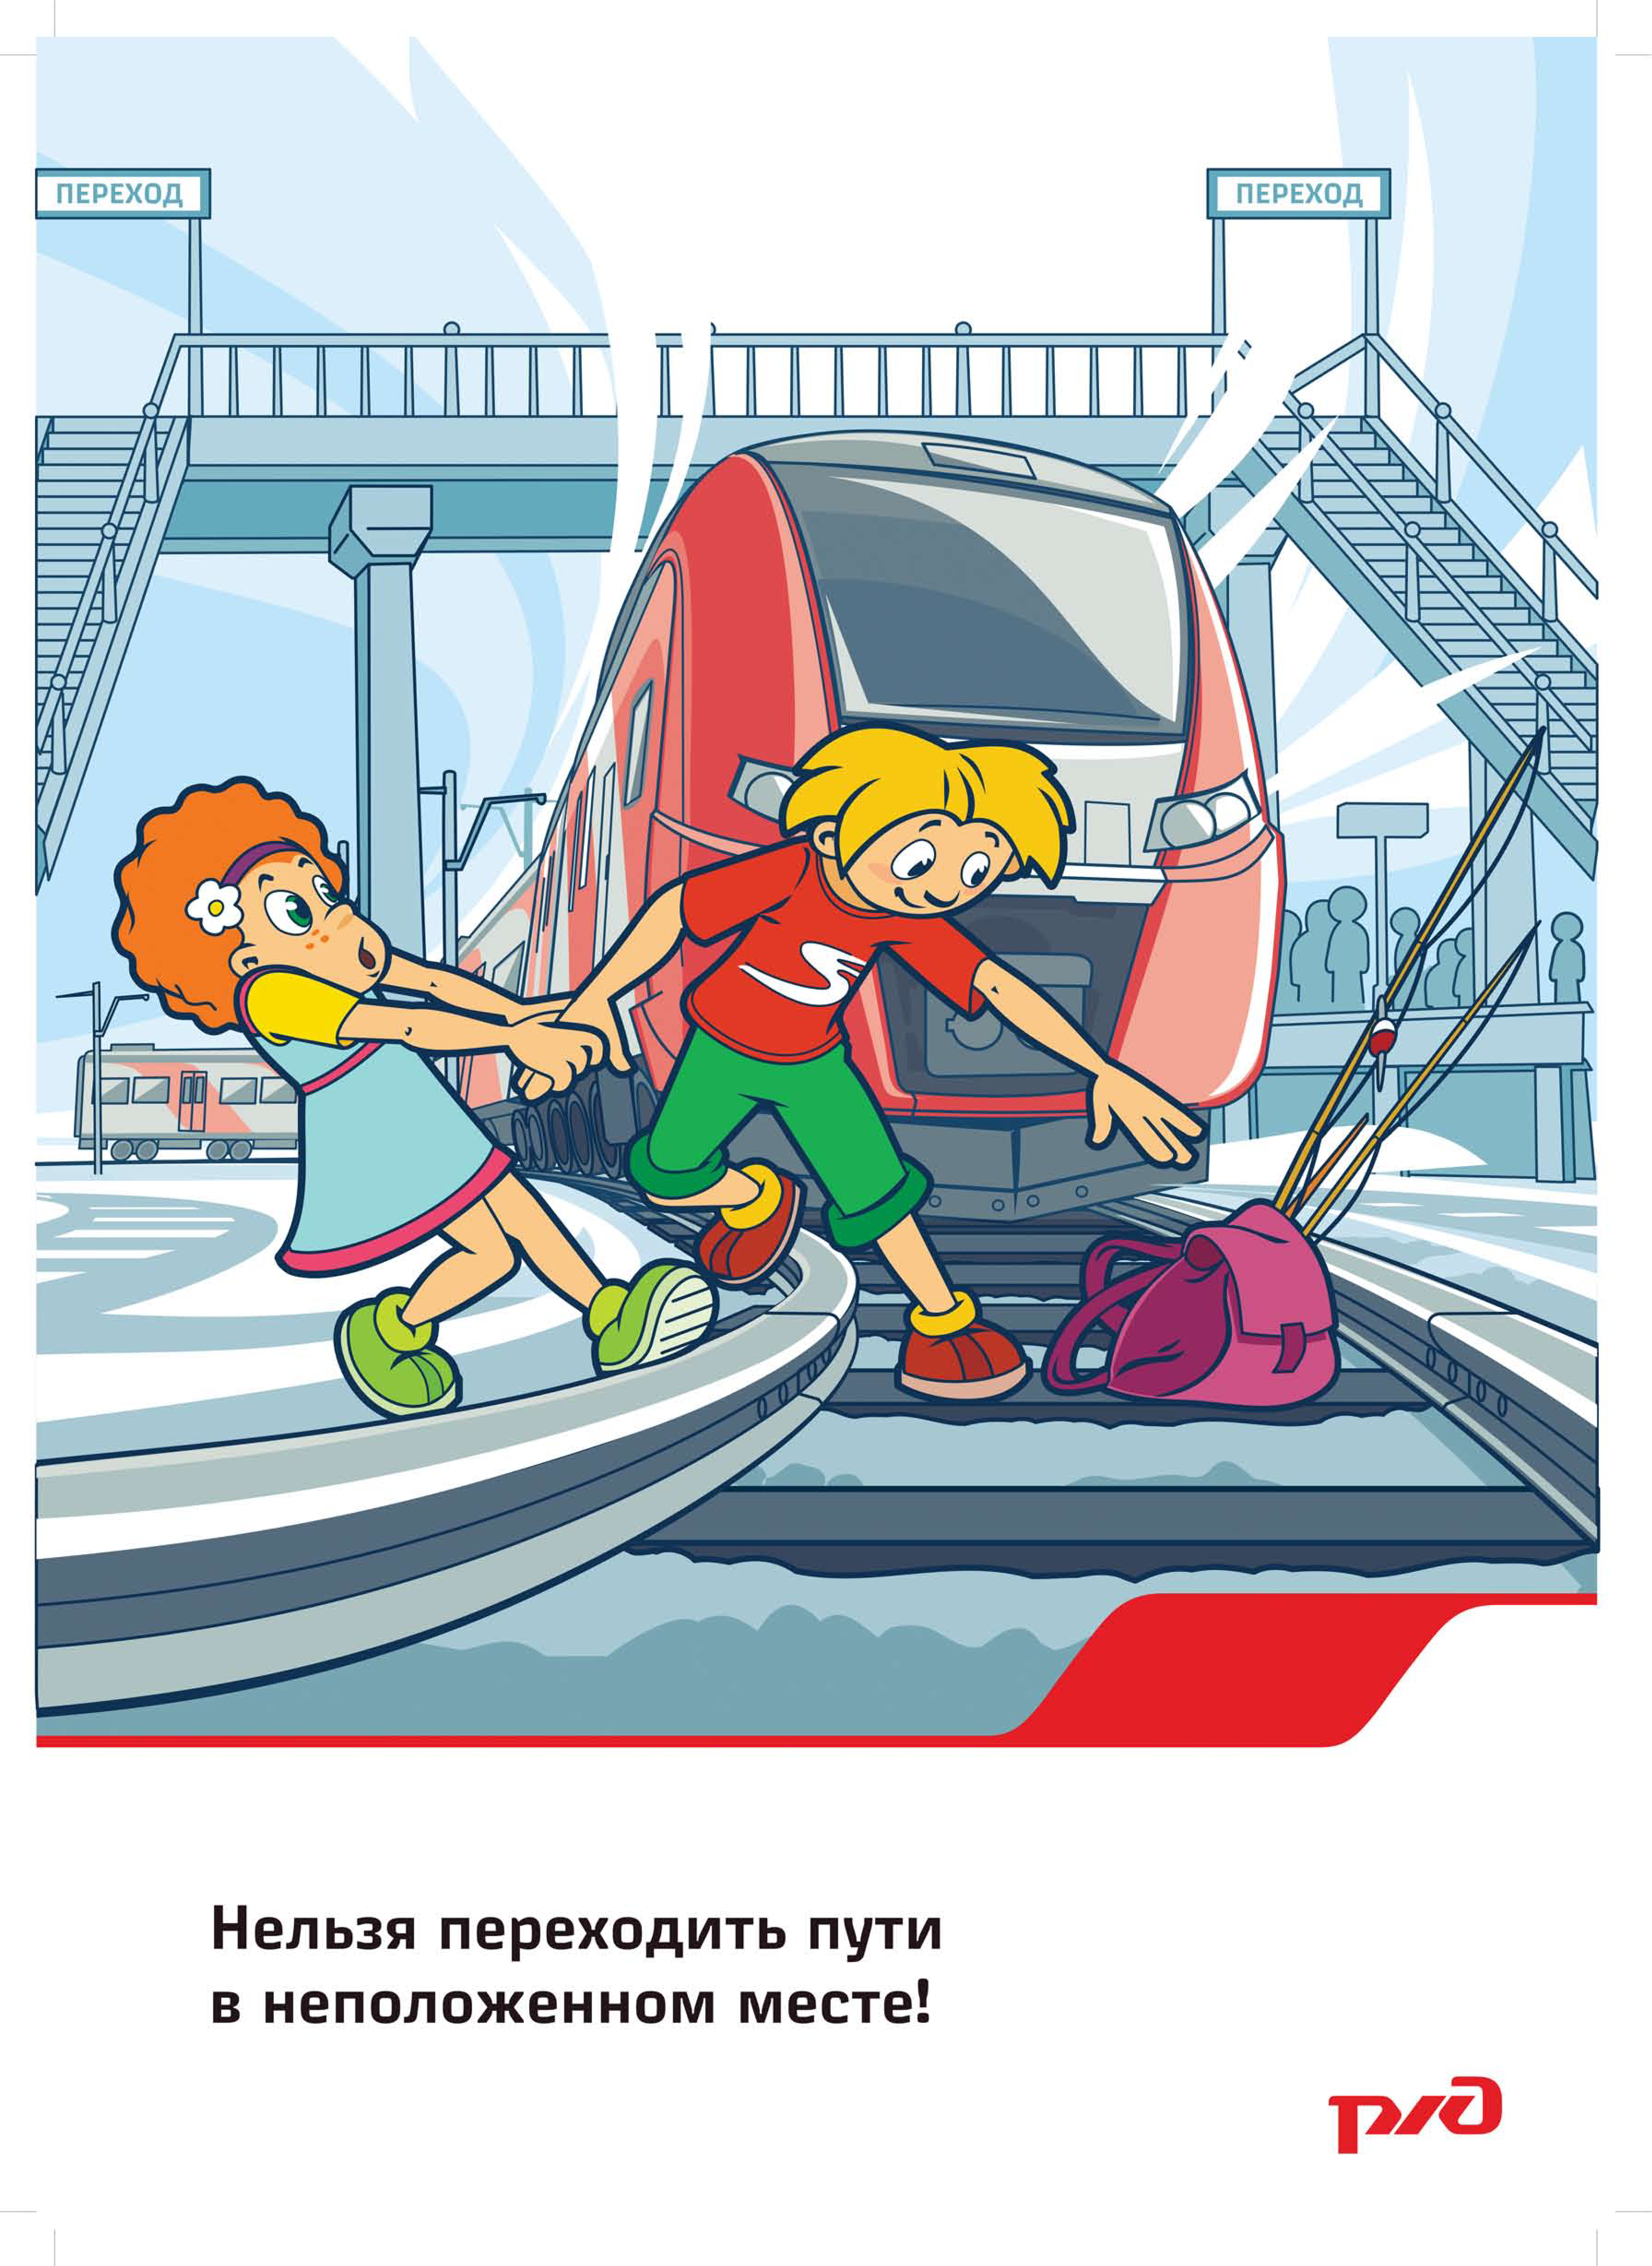 ВНИМАНИЕ! Соблюдайте правила безопасного поведения на железнодорожном транспорте.